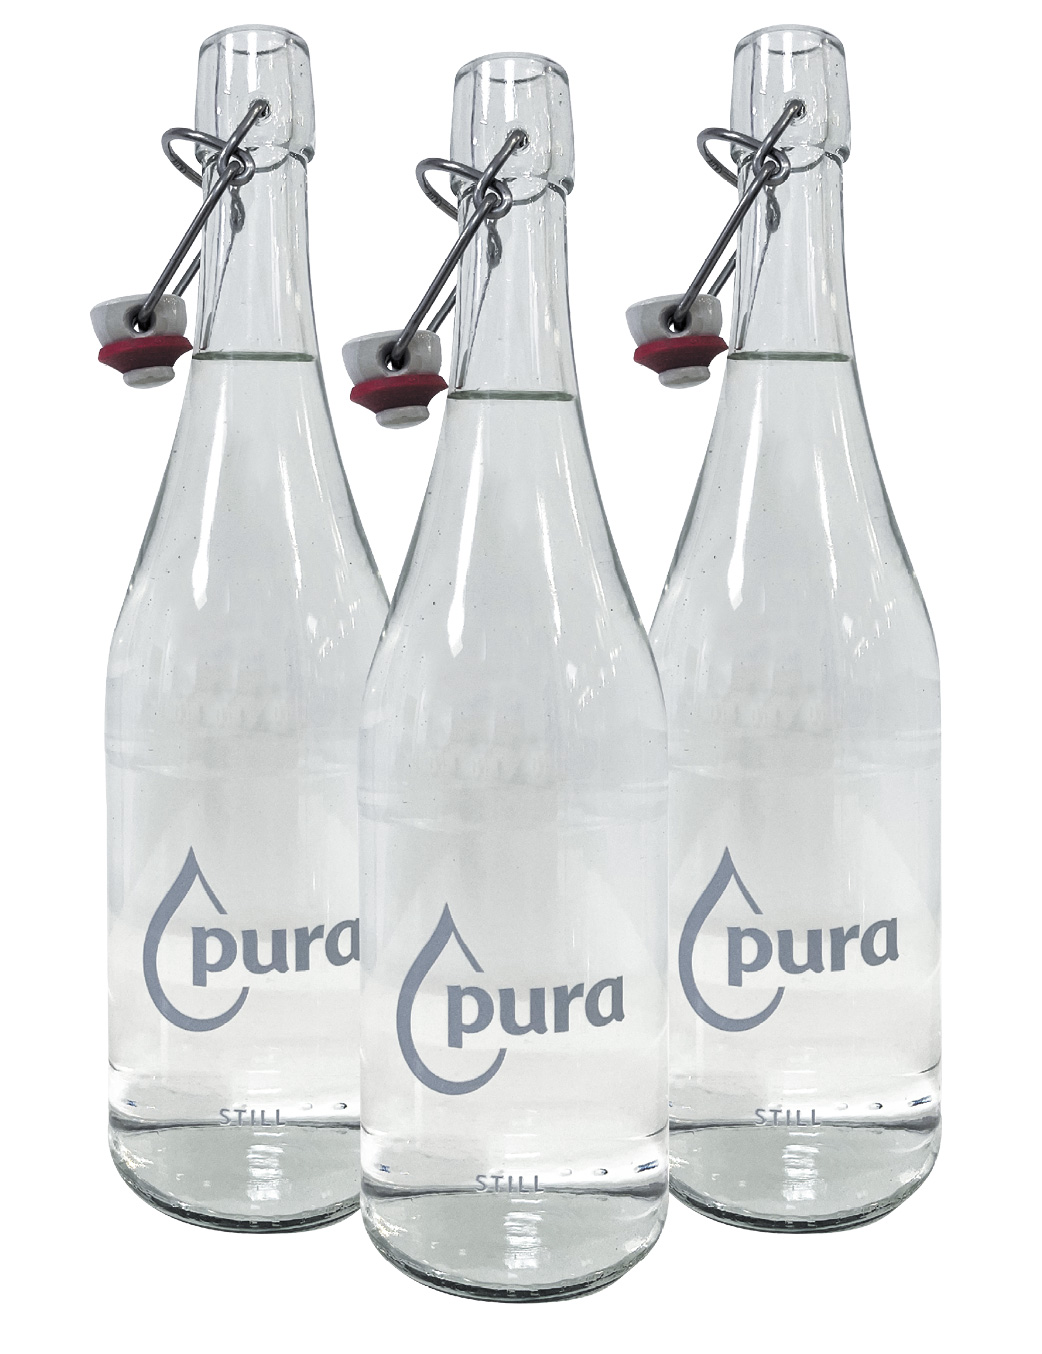 pura branded glass water bottles